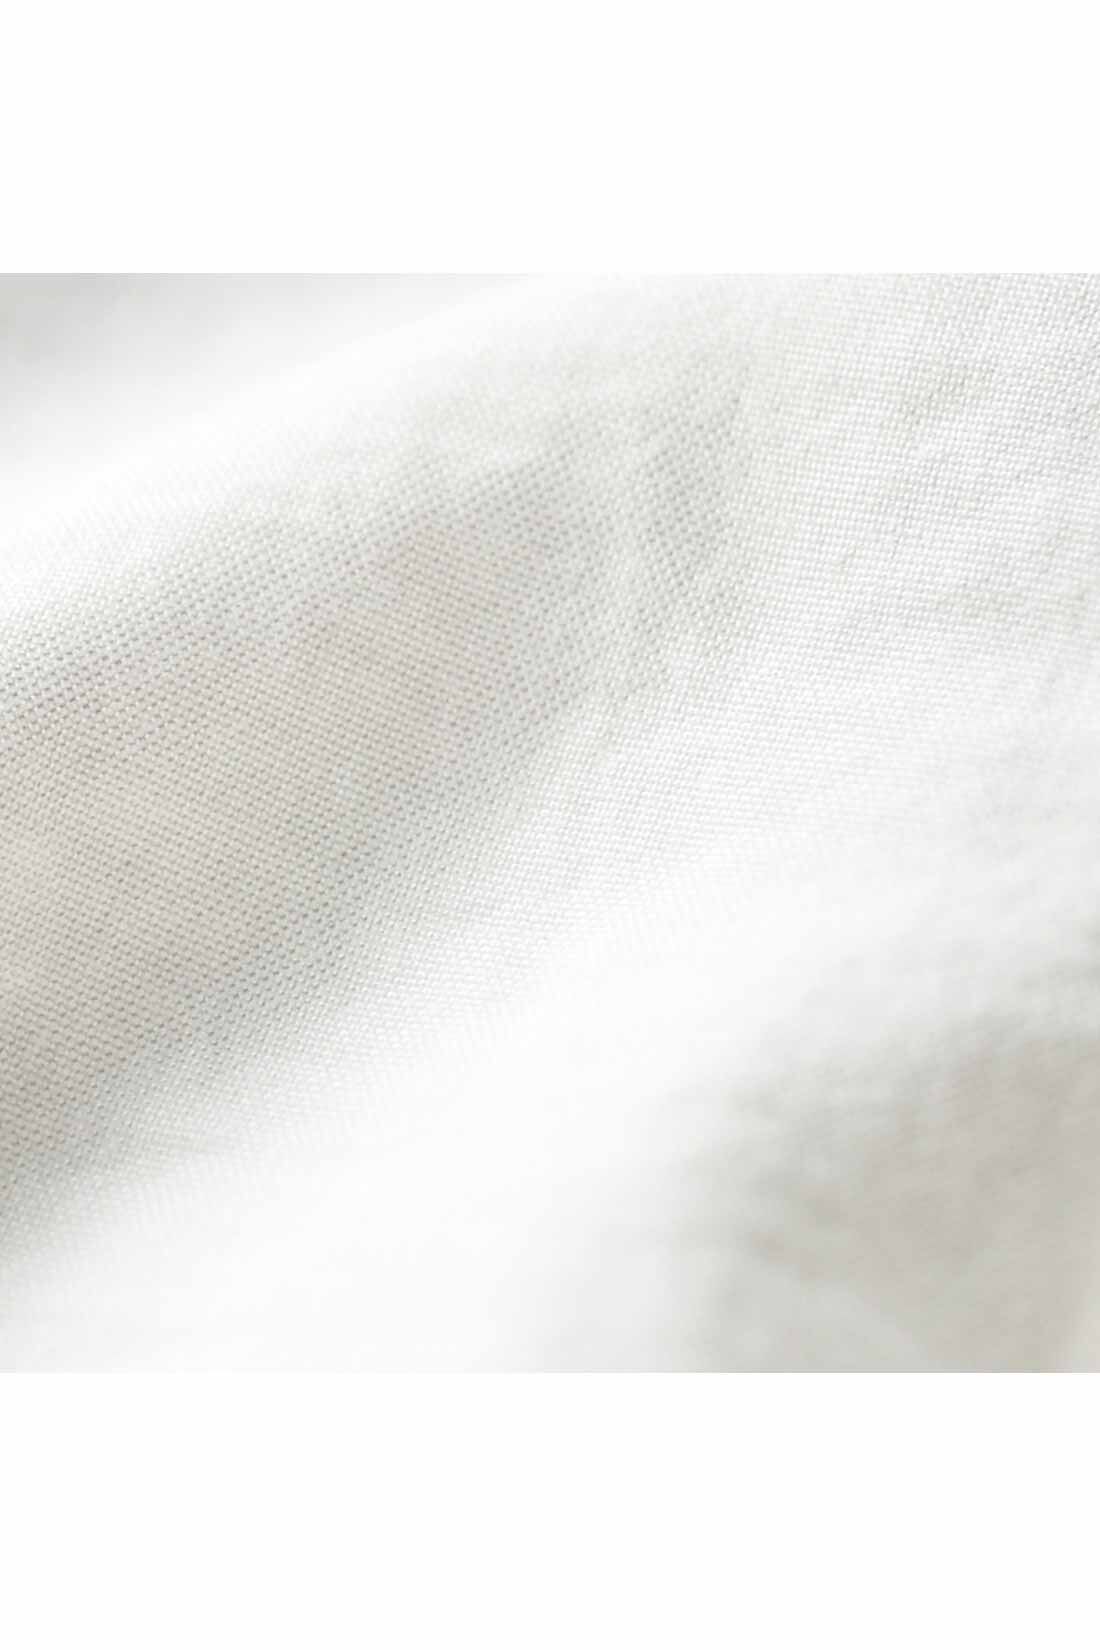 IEDIT|IEDIT[イディット]　繊細な表情がエレガントなリバーレース遣いブラウス〈ブラック〉|ヴィンテージのような風合いのある表面感の布はく素材。